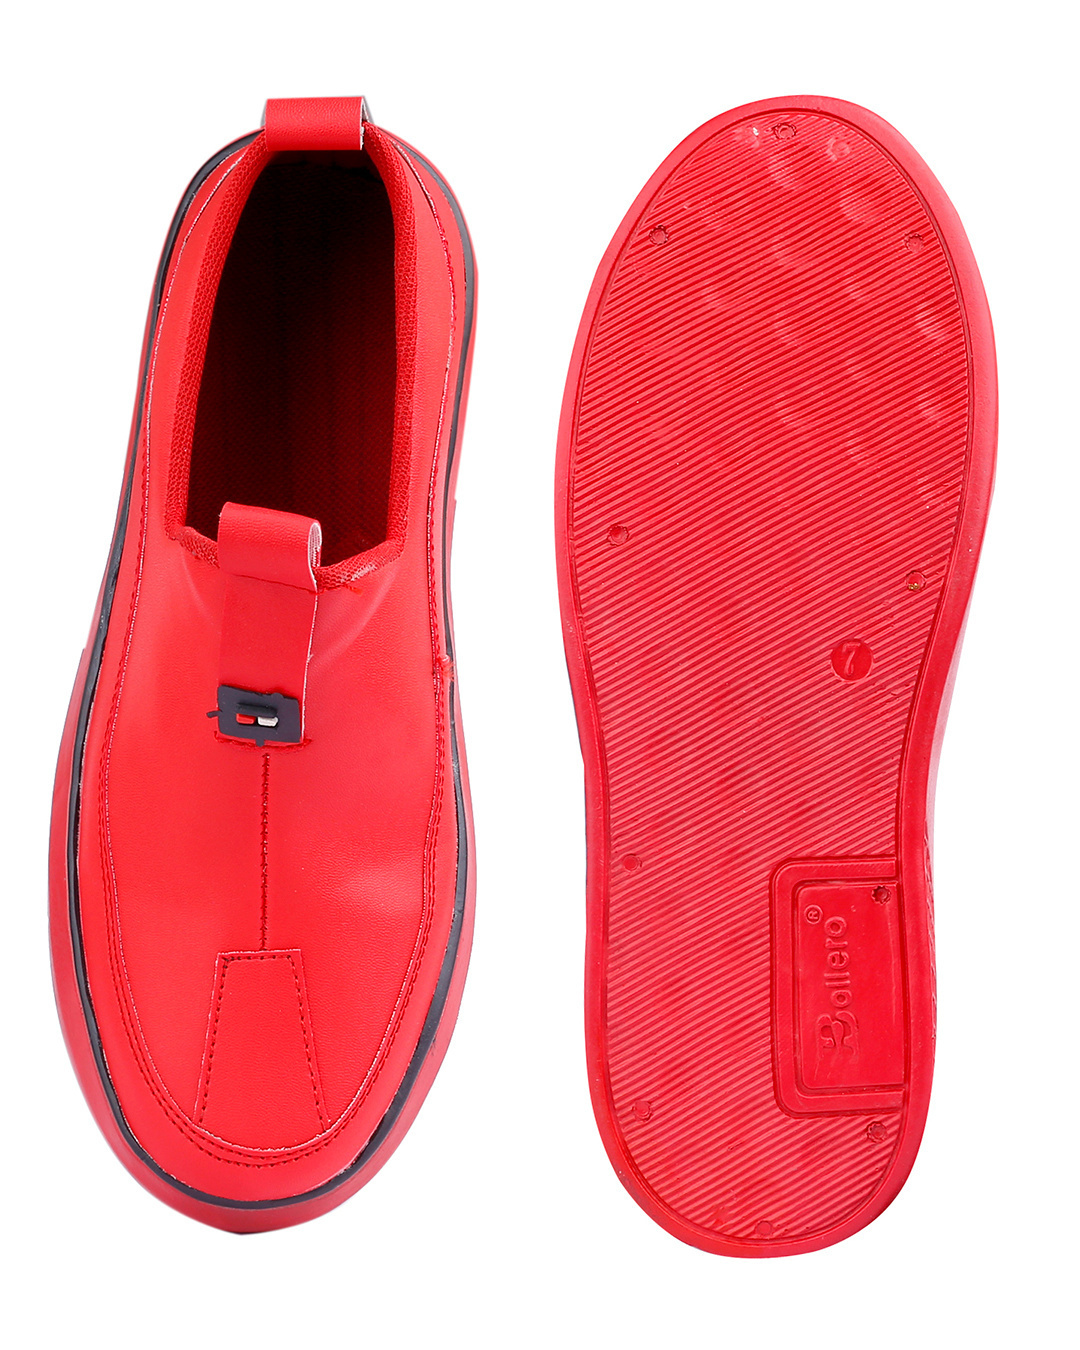 Buy Men's Red Sneakers Online in India at Bewakoof